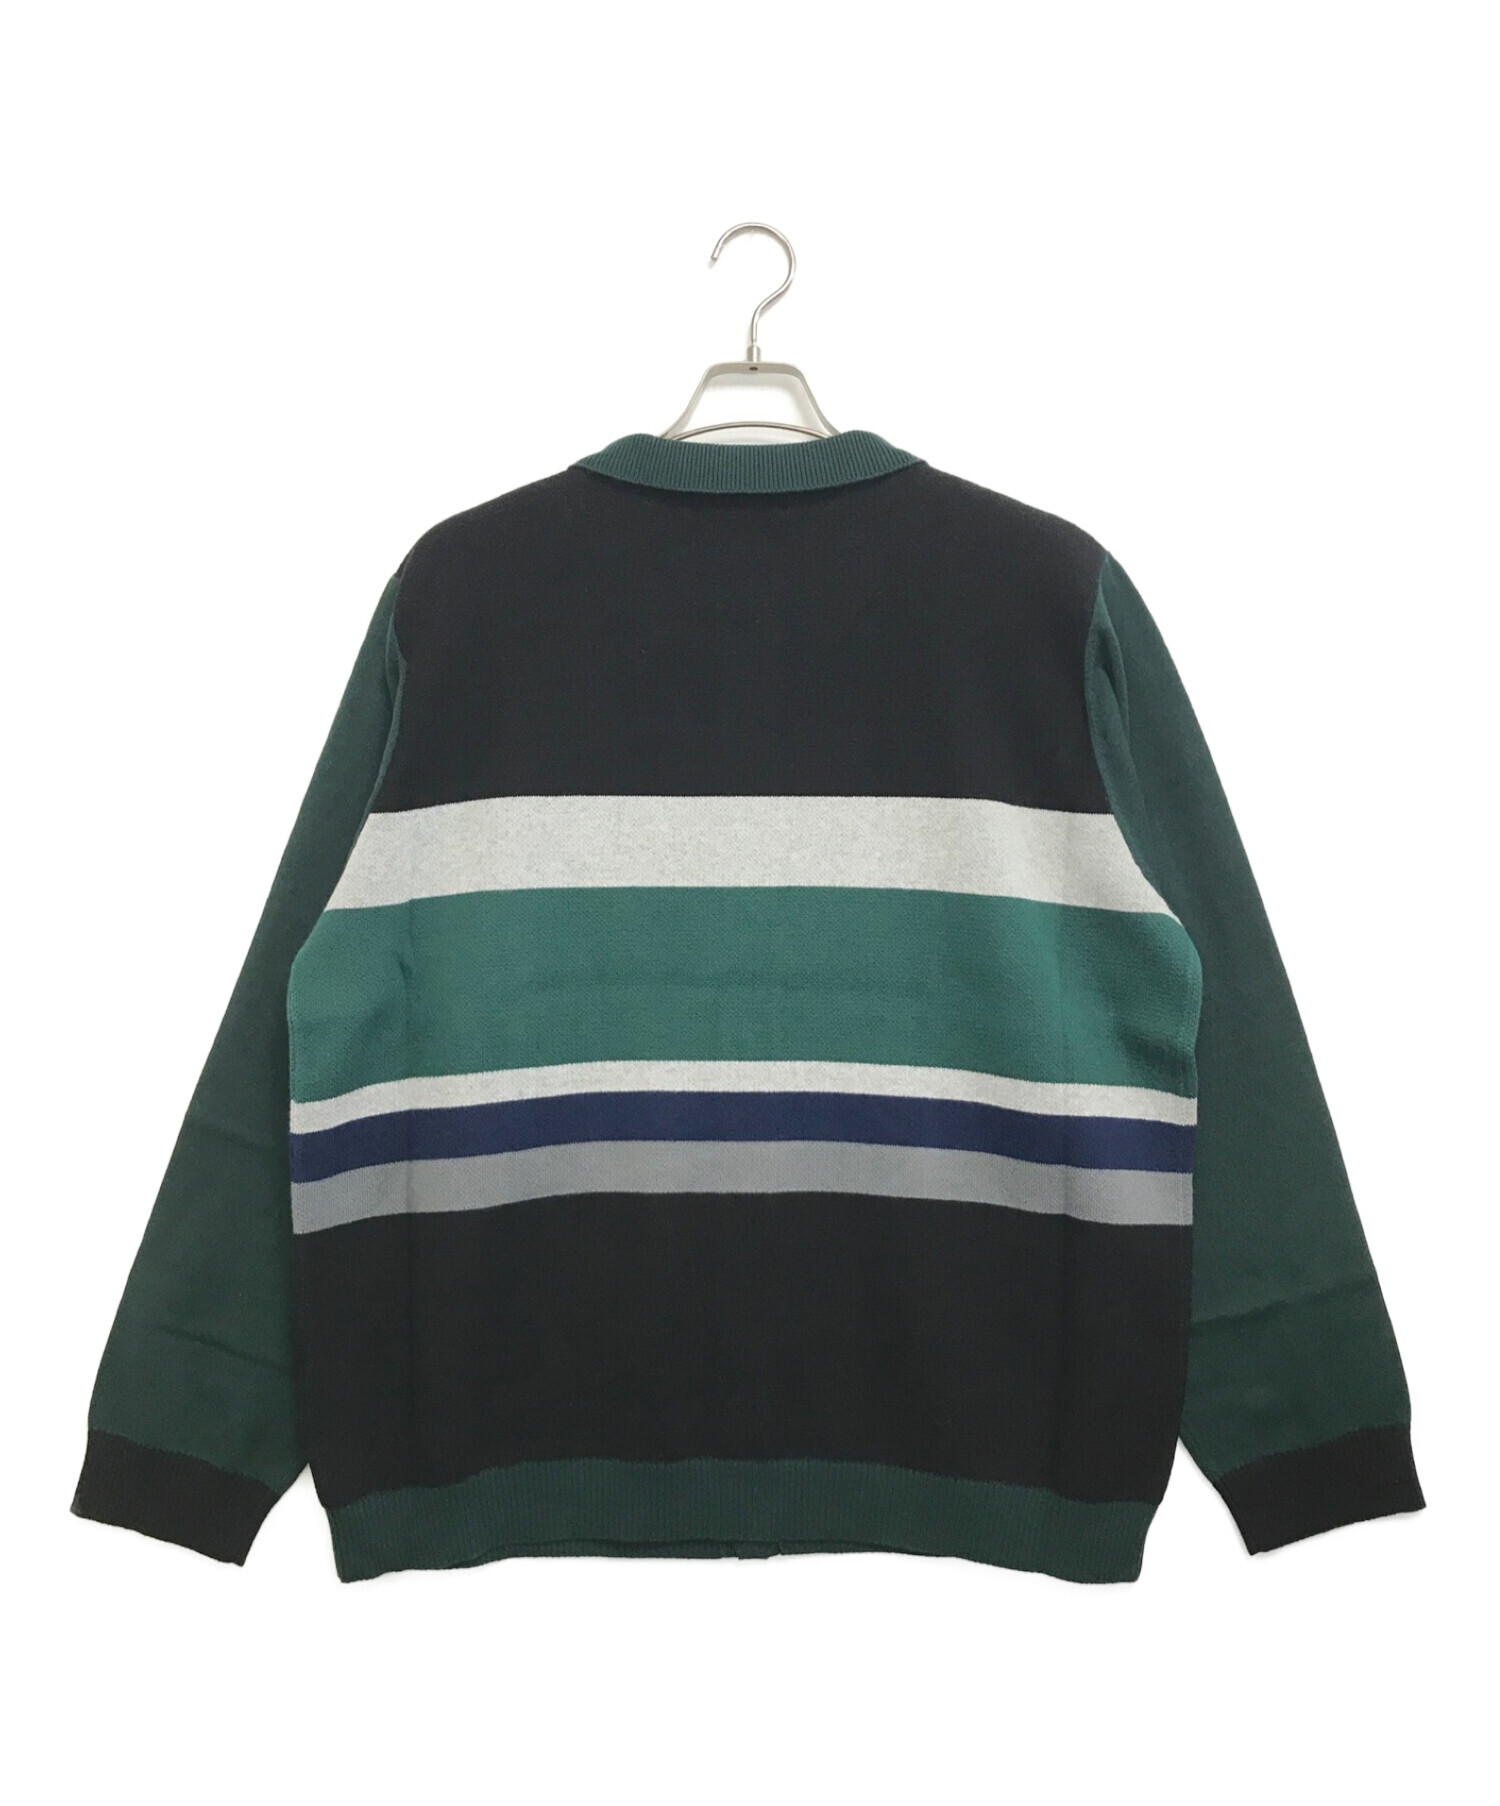 TTT MSW (ティーモダンストリートウェア) Border Knit Cardigan ブラック×グリーン サイズ:L